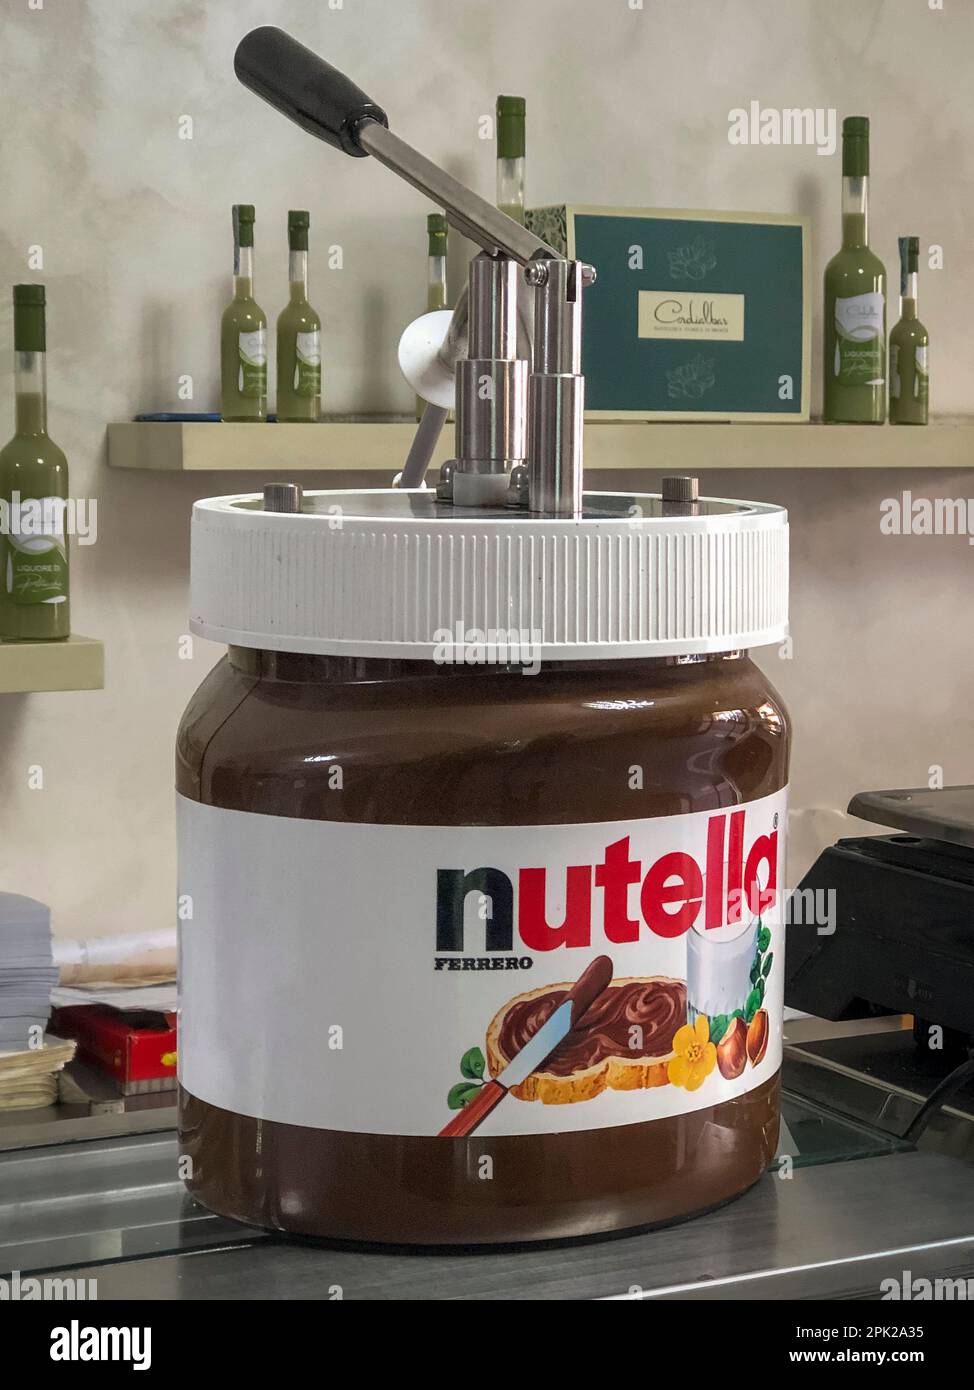 Un dispenser per servire la Nutella, la famosa crema di nocciole e cioccolato italiano, spesso spremuta in brioche o croissant per una colazione veloce Foto Stock